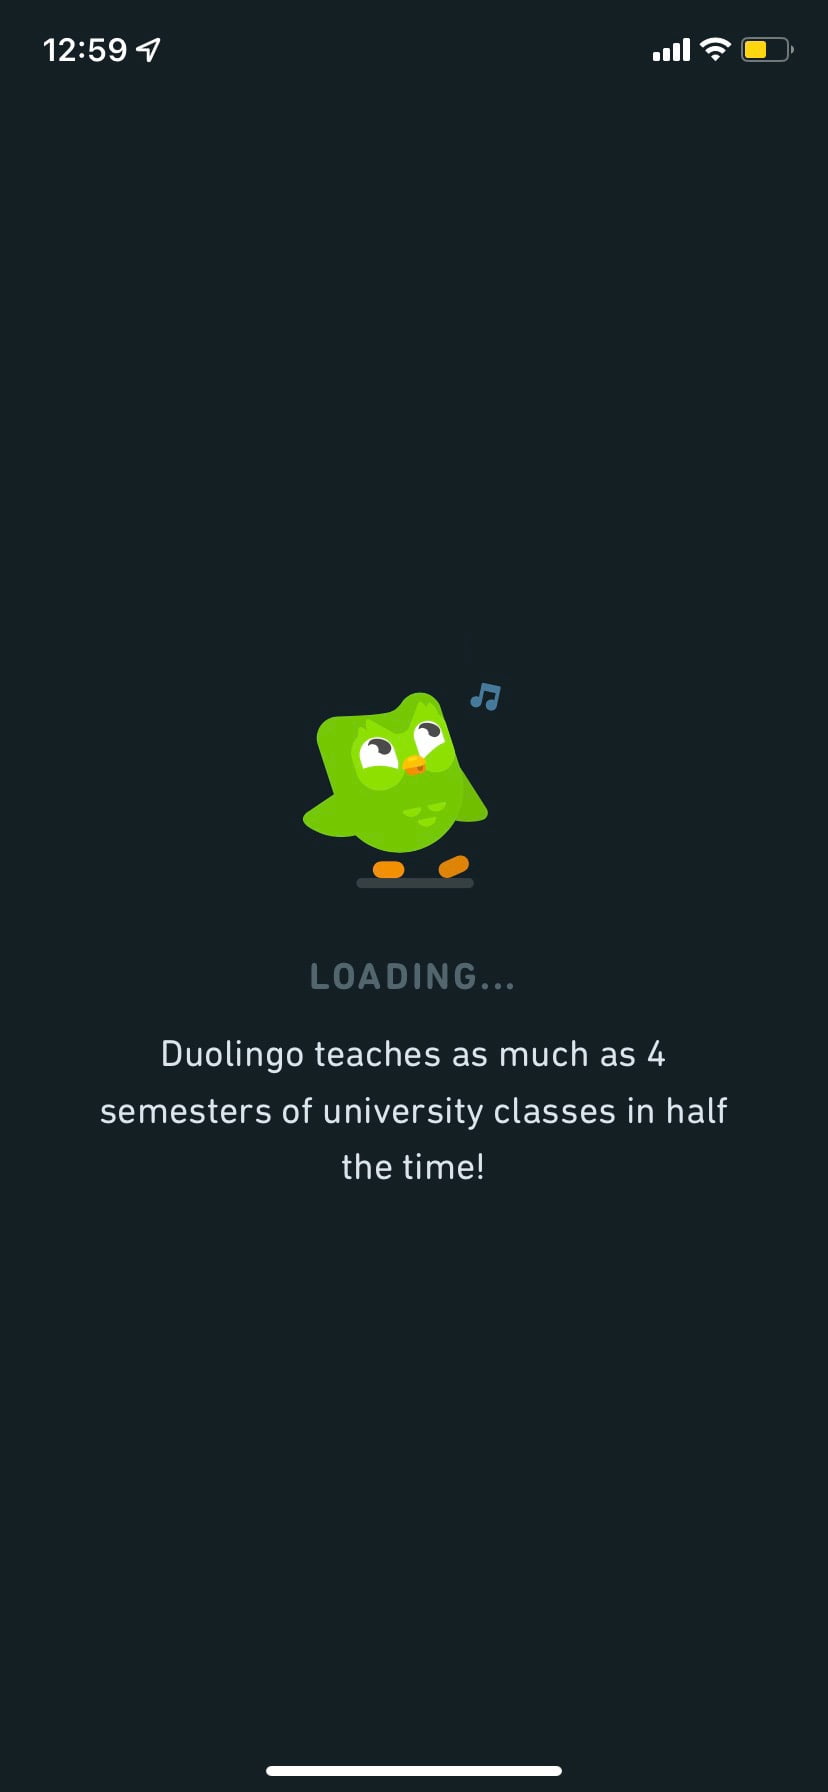 duolingo loading animation ux